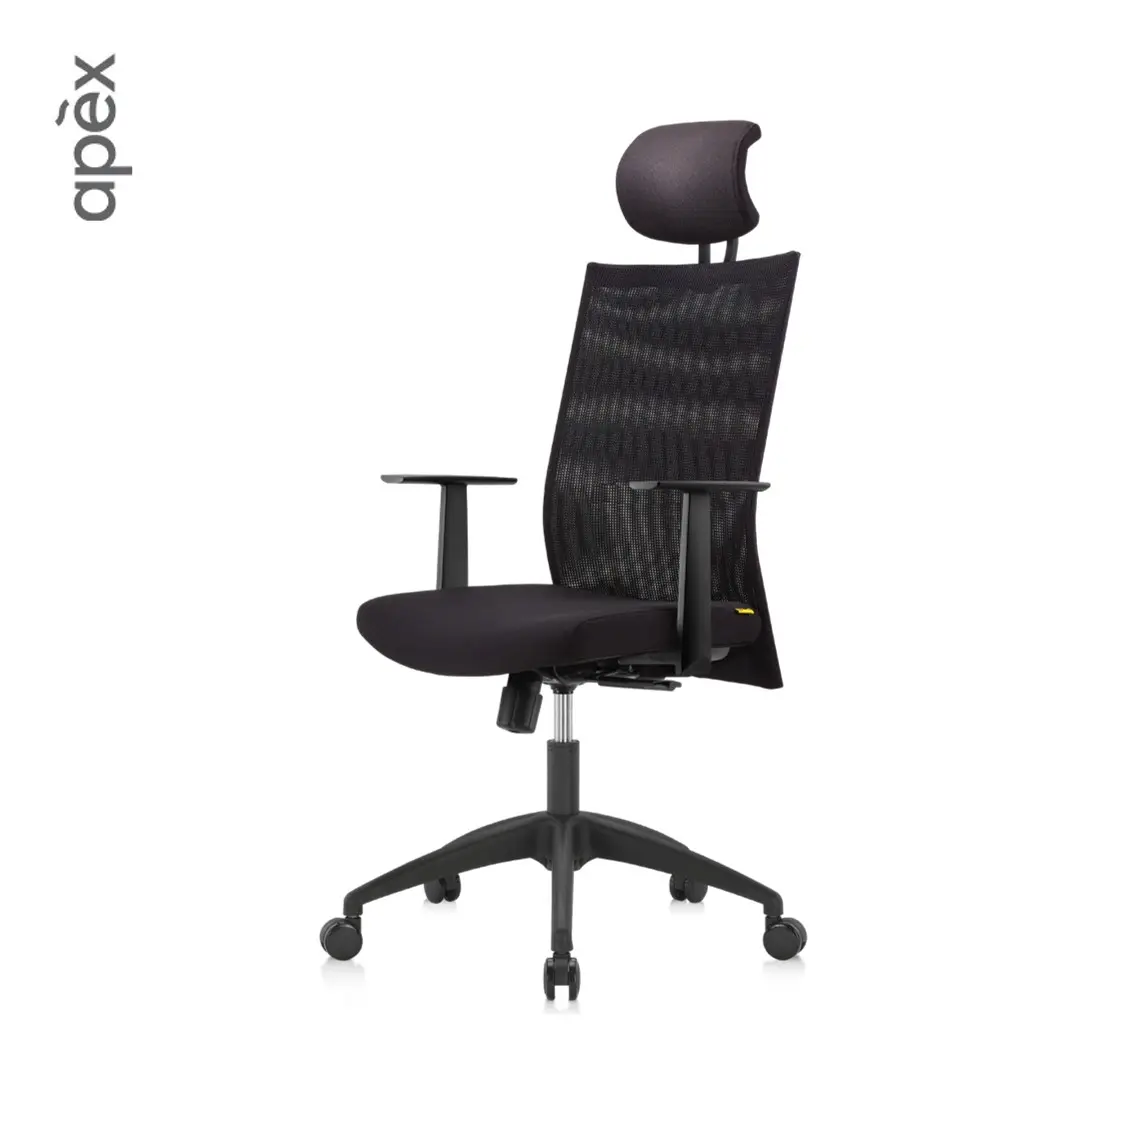 Esclusivo mobili per ufficio sedia da ufficio con schienale alto sedia ergonomica per Computer sedia da ufficio operativa per il personale per postazione di lavoro direzionale